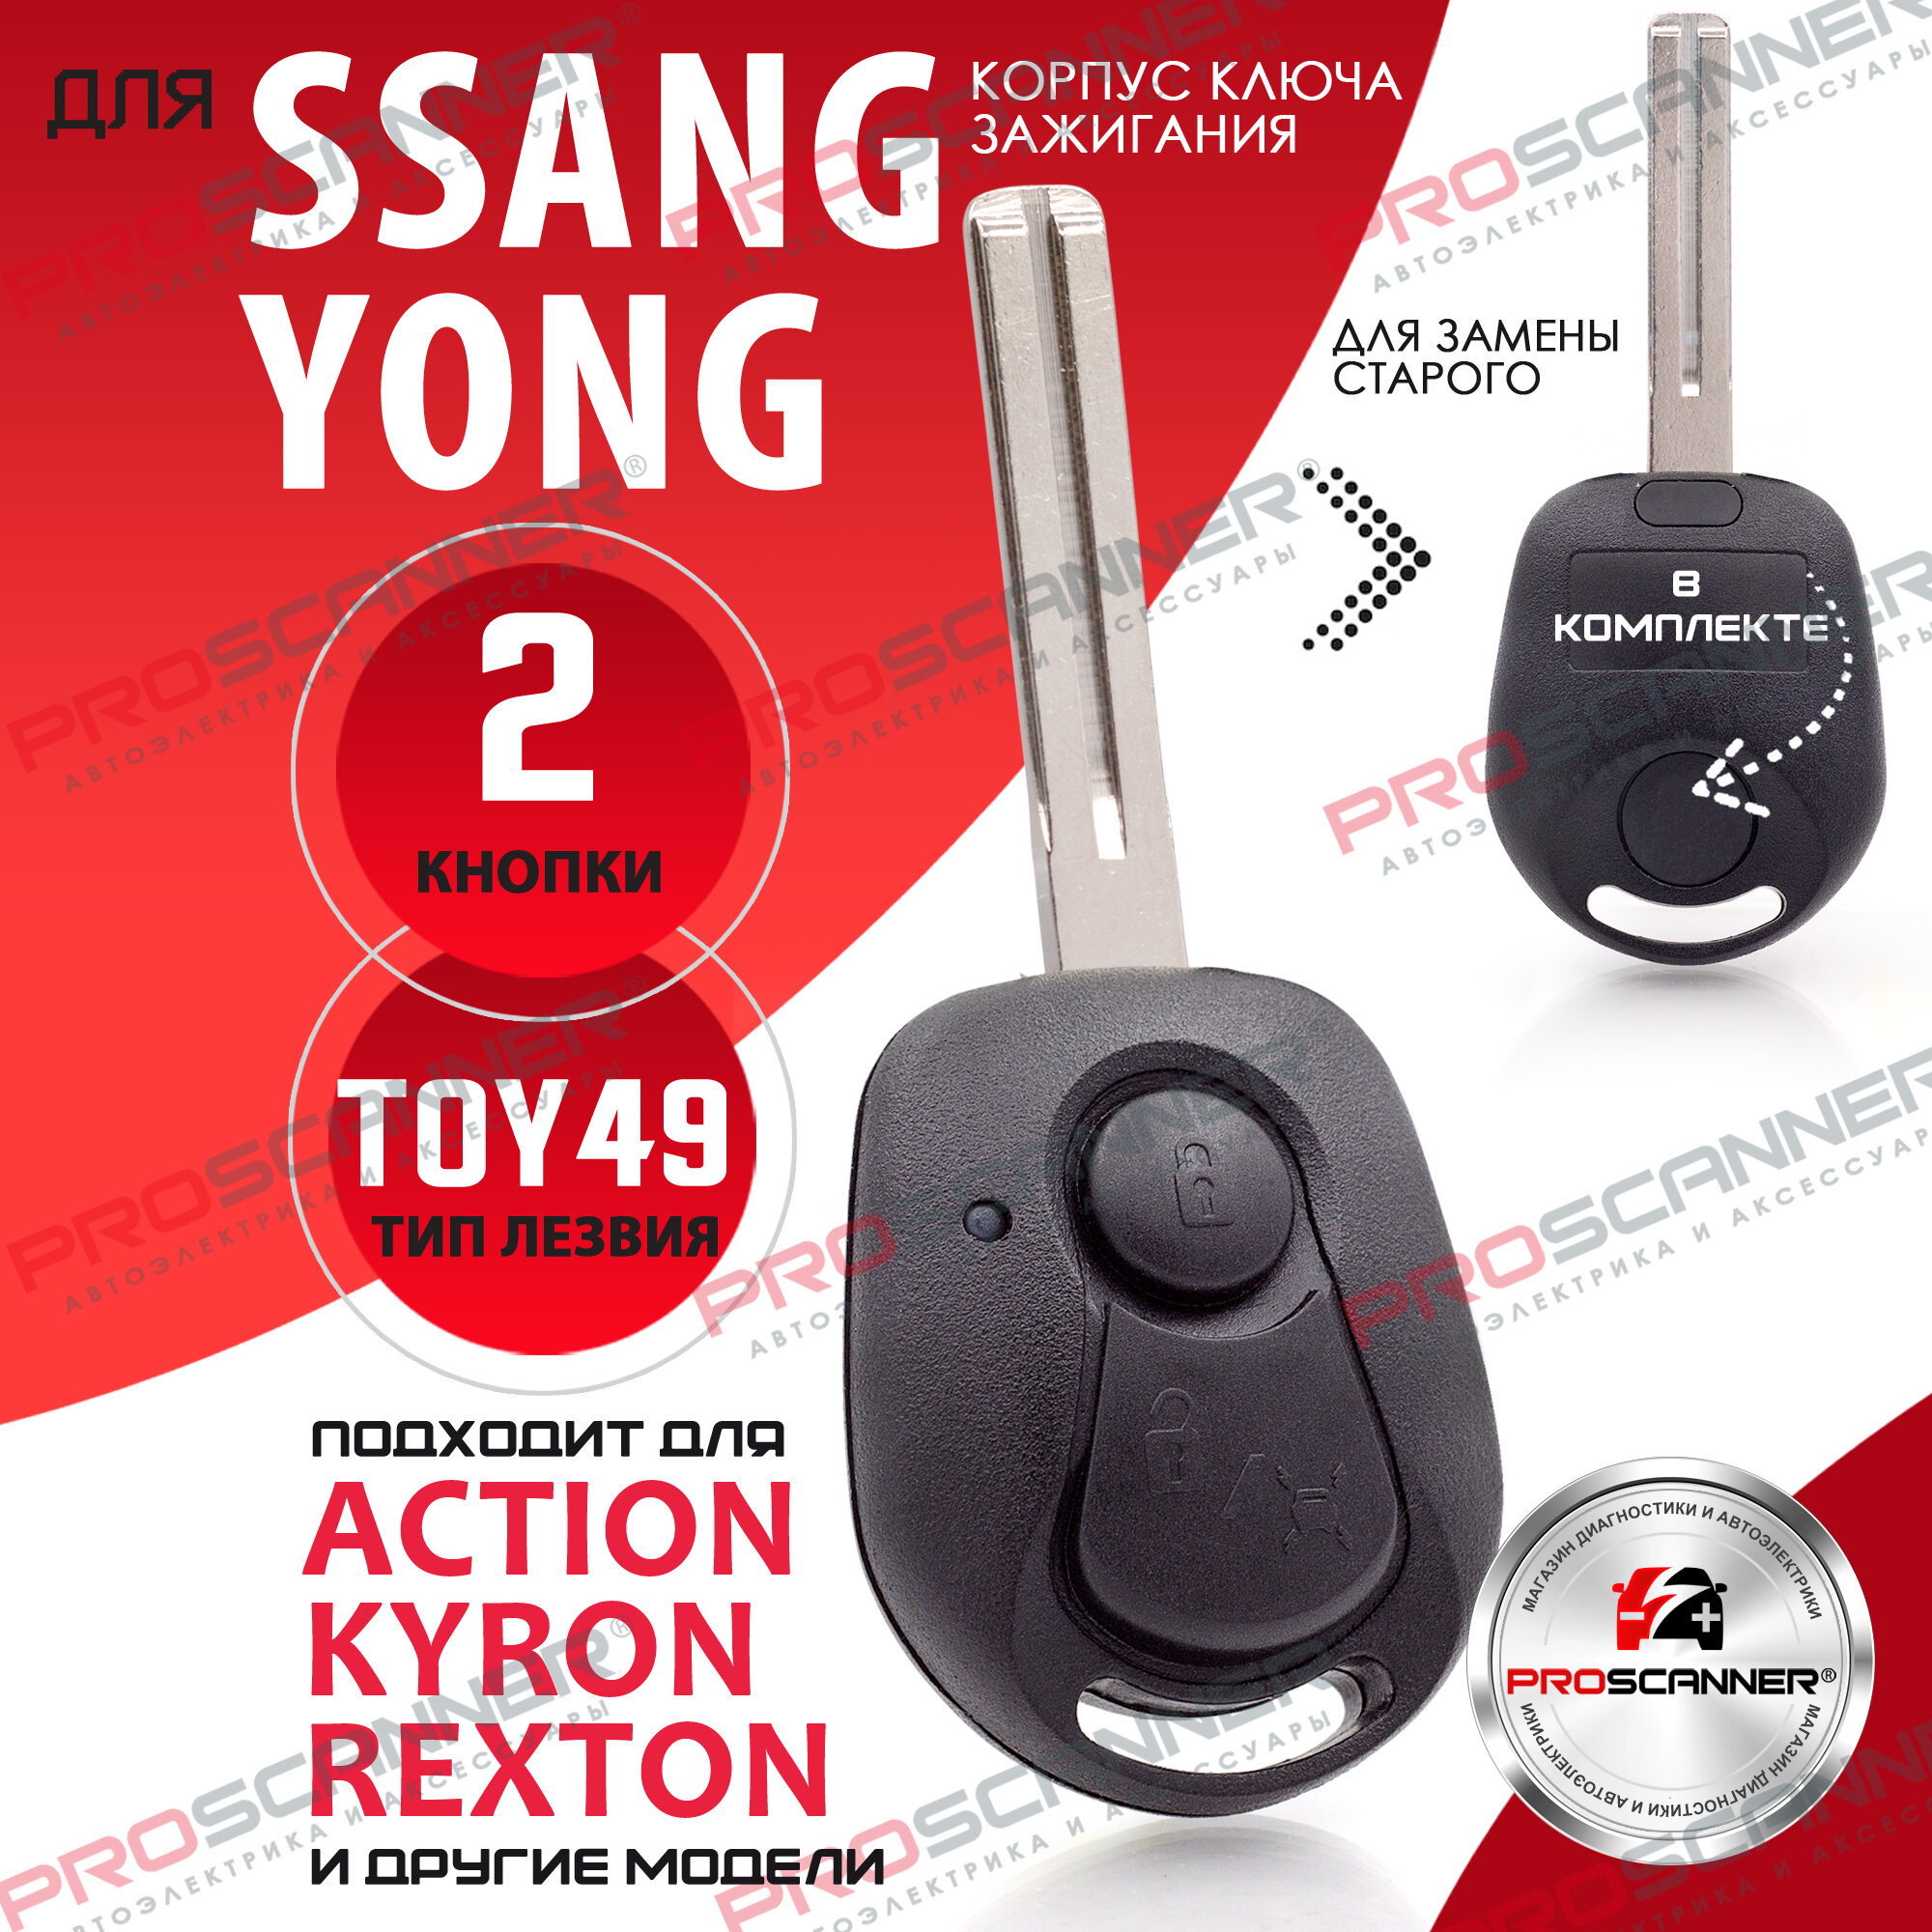 Корпус ключа зажигания для SsangYong (2 кнопки, лезвие TOY49) / ключ автомобильный ссанг йонг